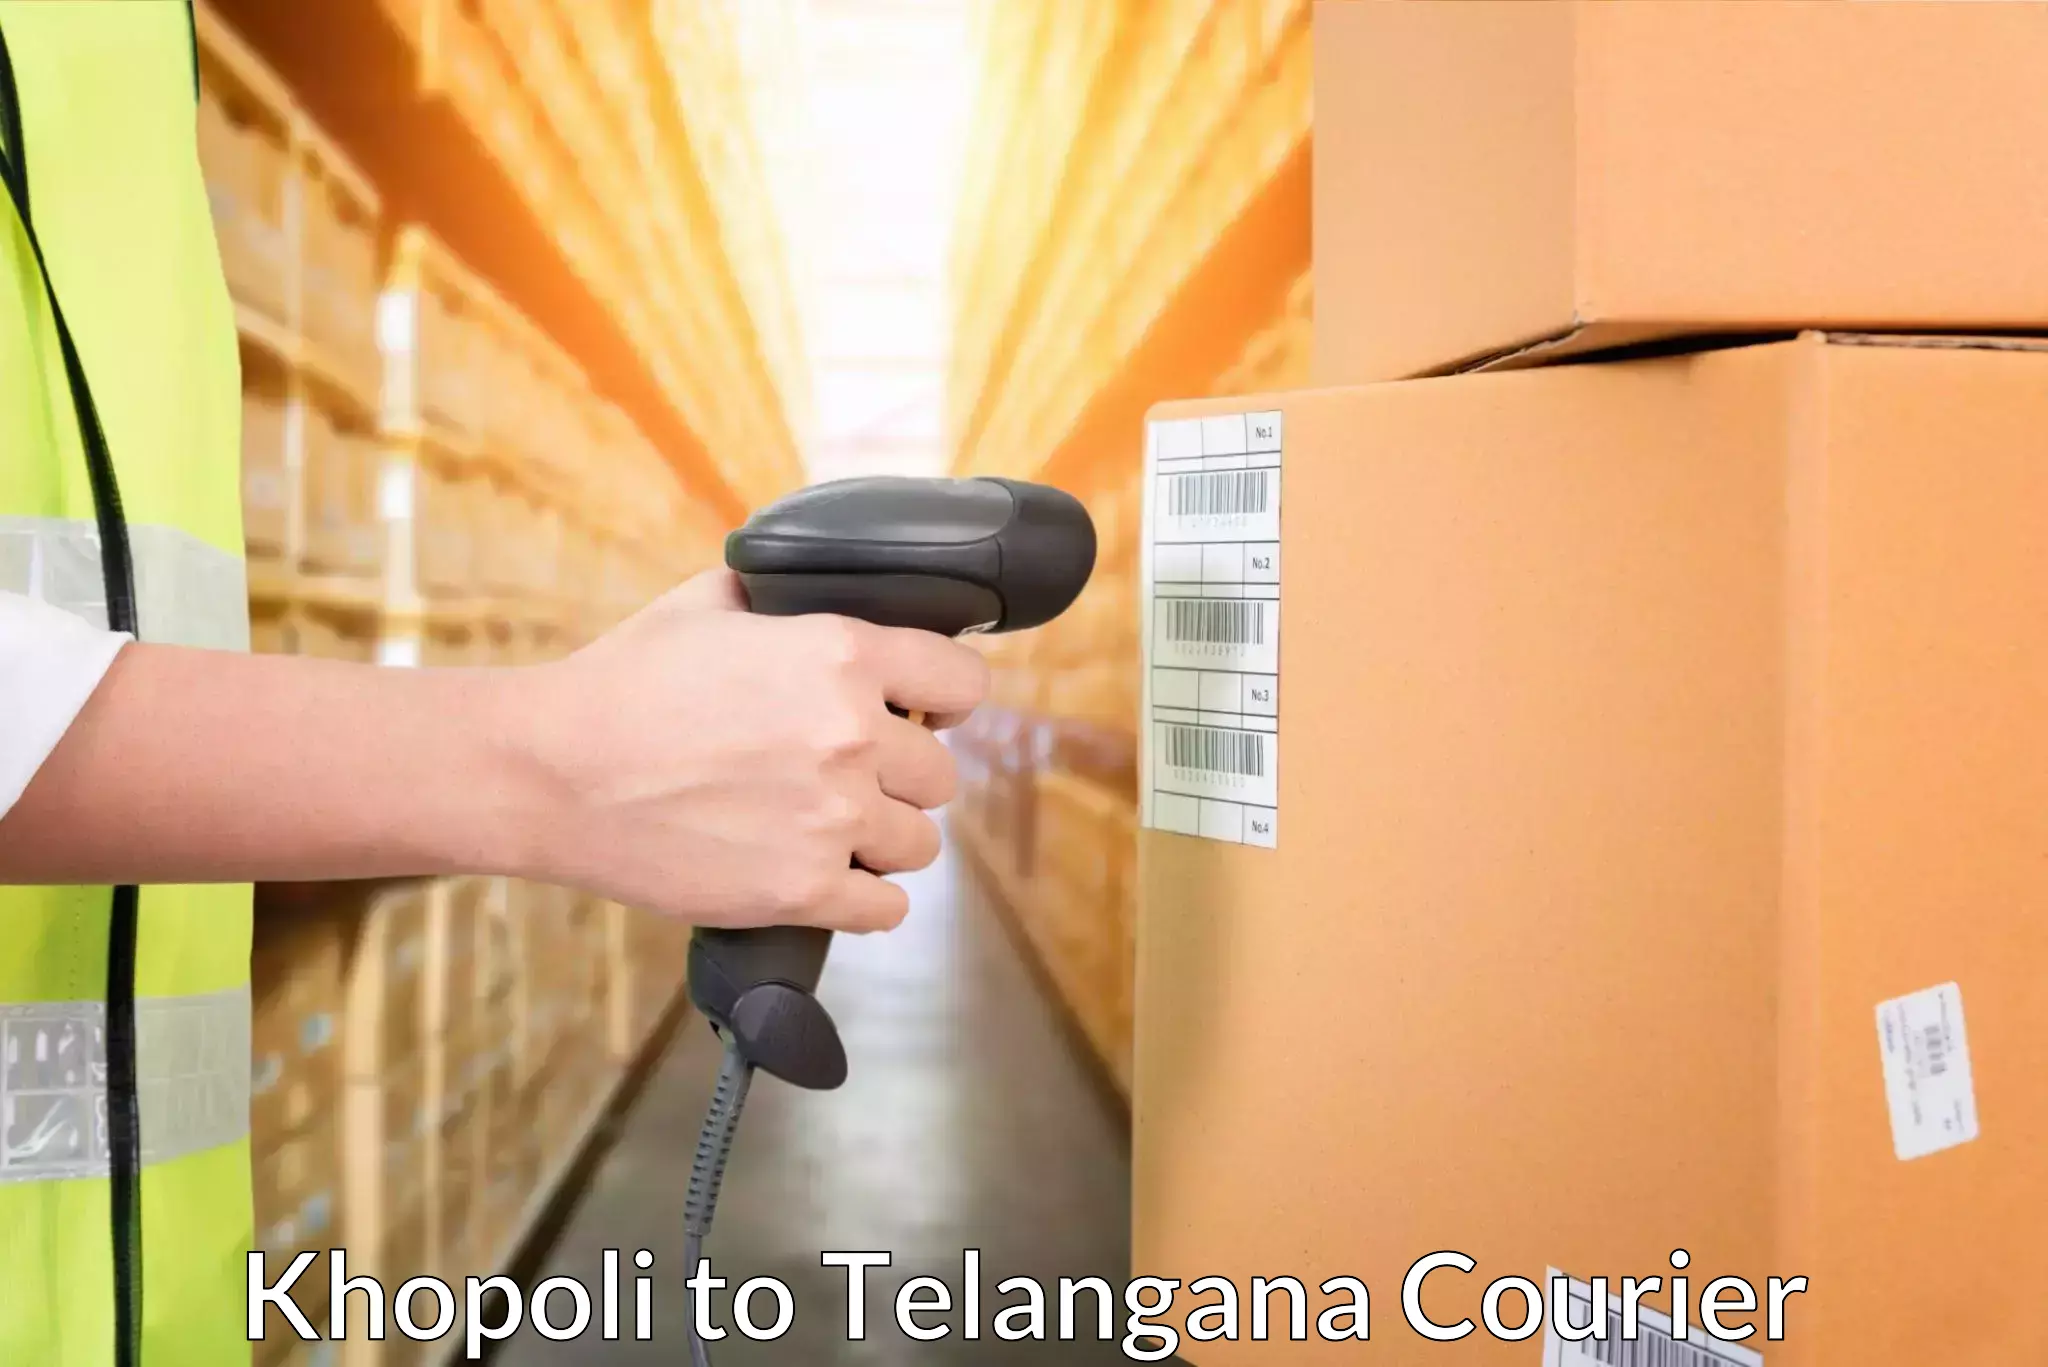 Customized shipping options Khopoli to Hajipur Mancherial